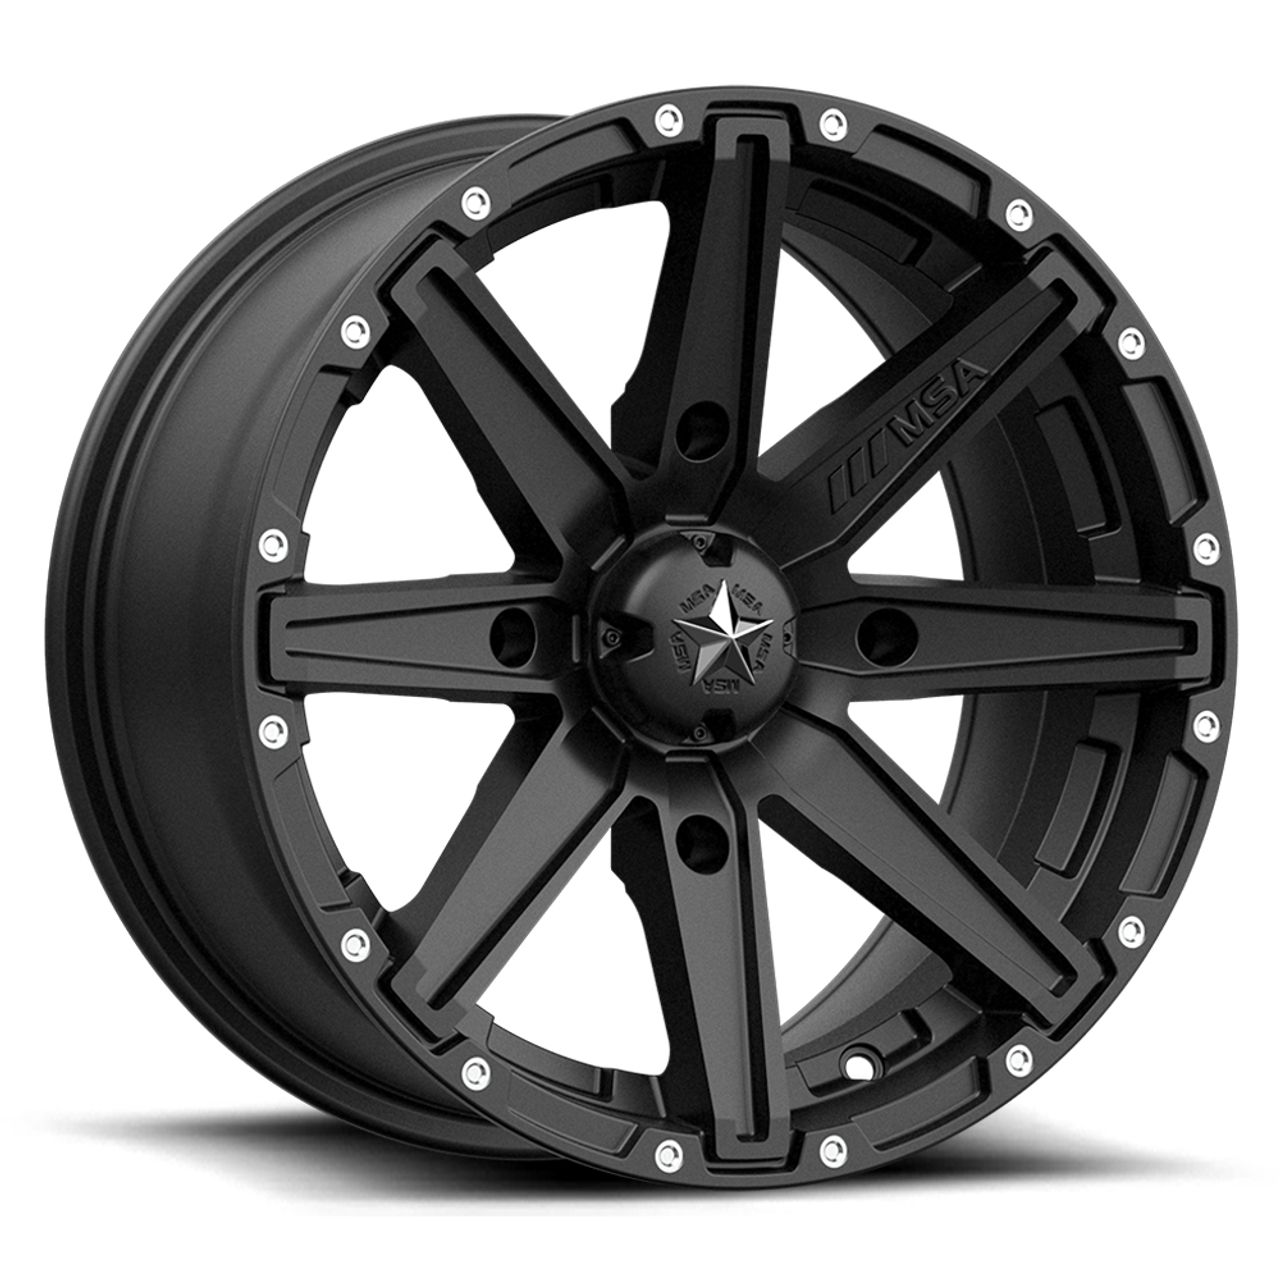 MSA Offroad Wheels M33 Clutch 14x7 4x110 Satin Black Wheel 14" 10mm Rim